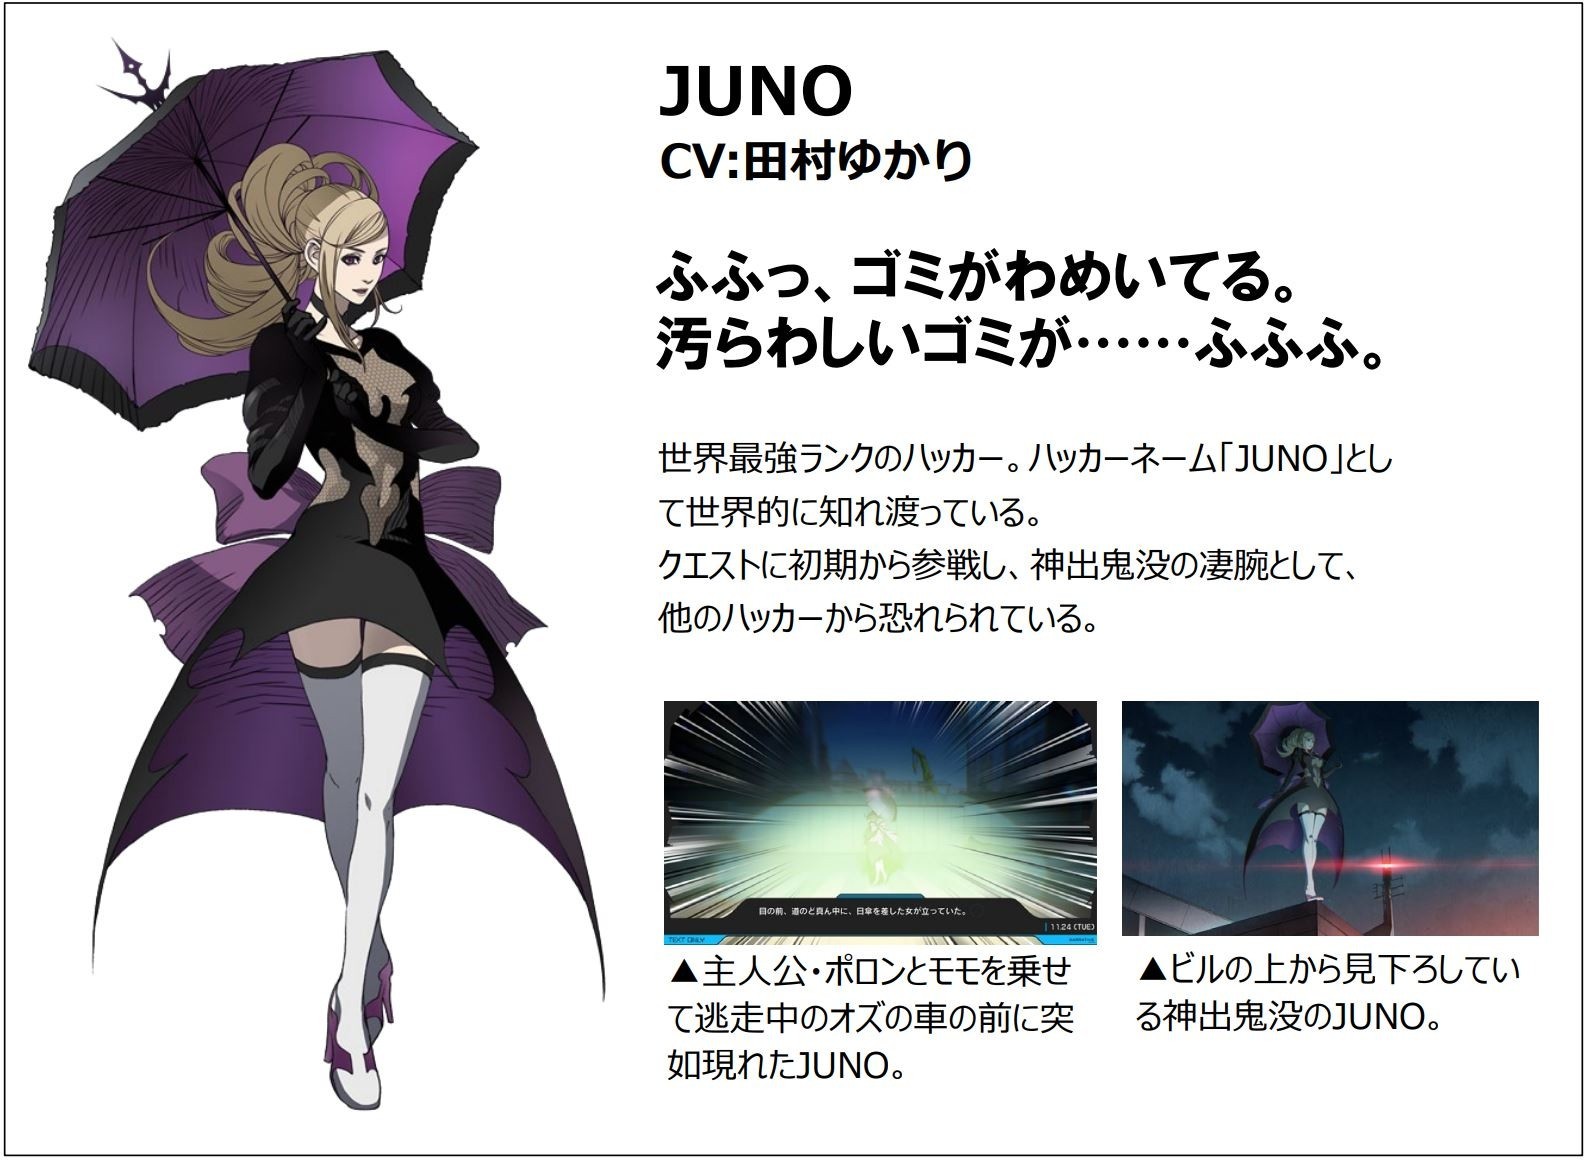 《匿名代码》公布神秘骇客“JUNO”与数学家“莉蒂・库玛”角色情报